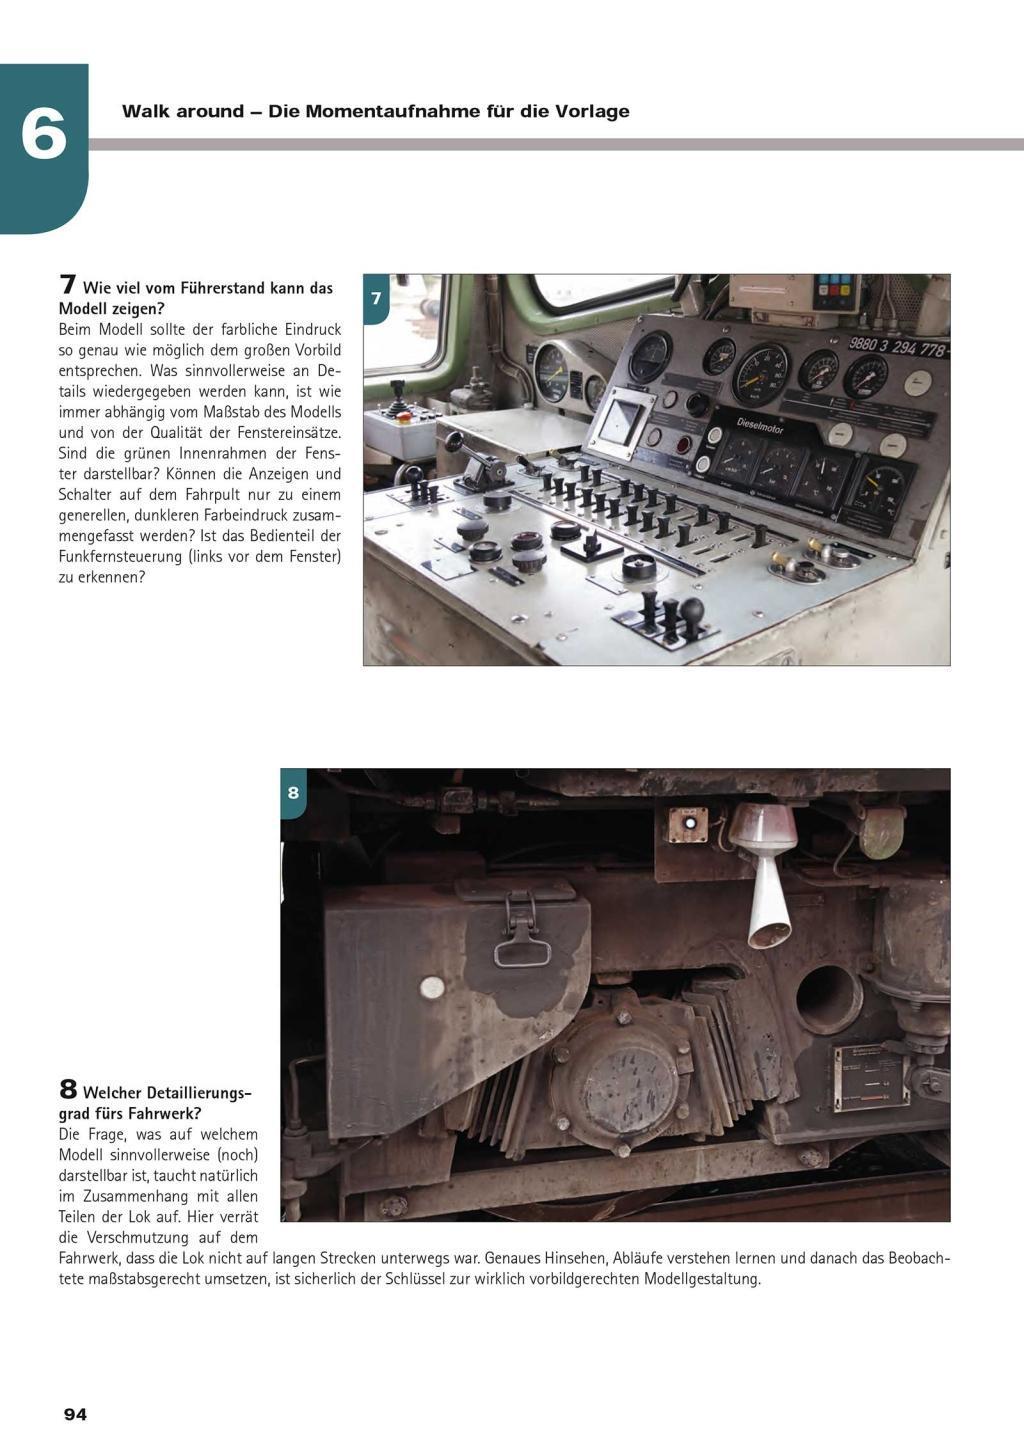 Fachbuch Erste Hilfe Airbrush Lokomotiven und Waggons farblich gestalten NEU 